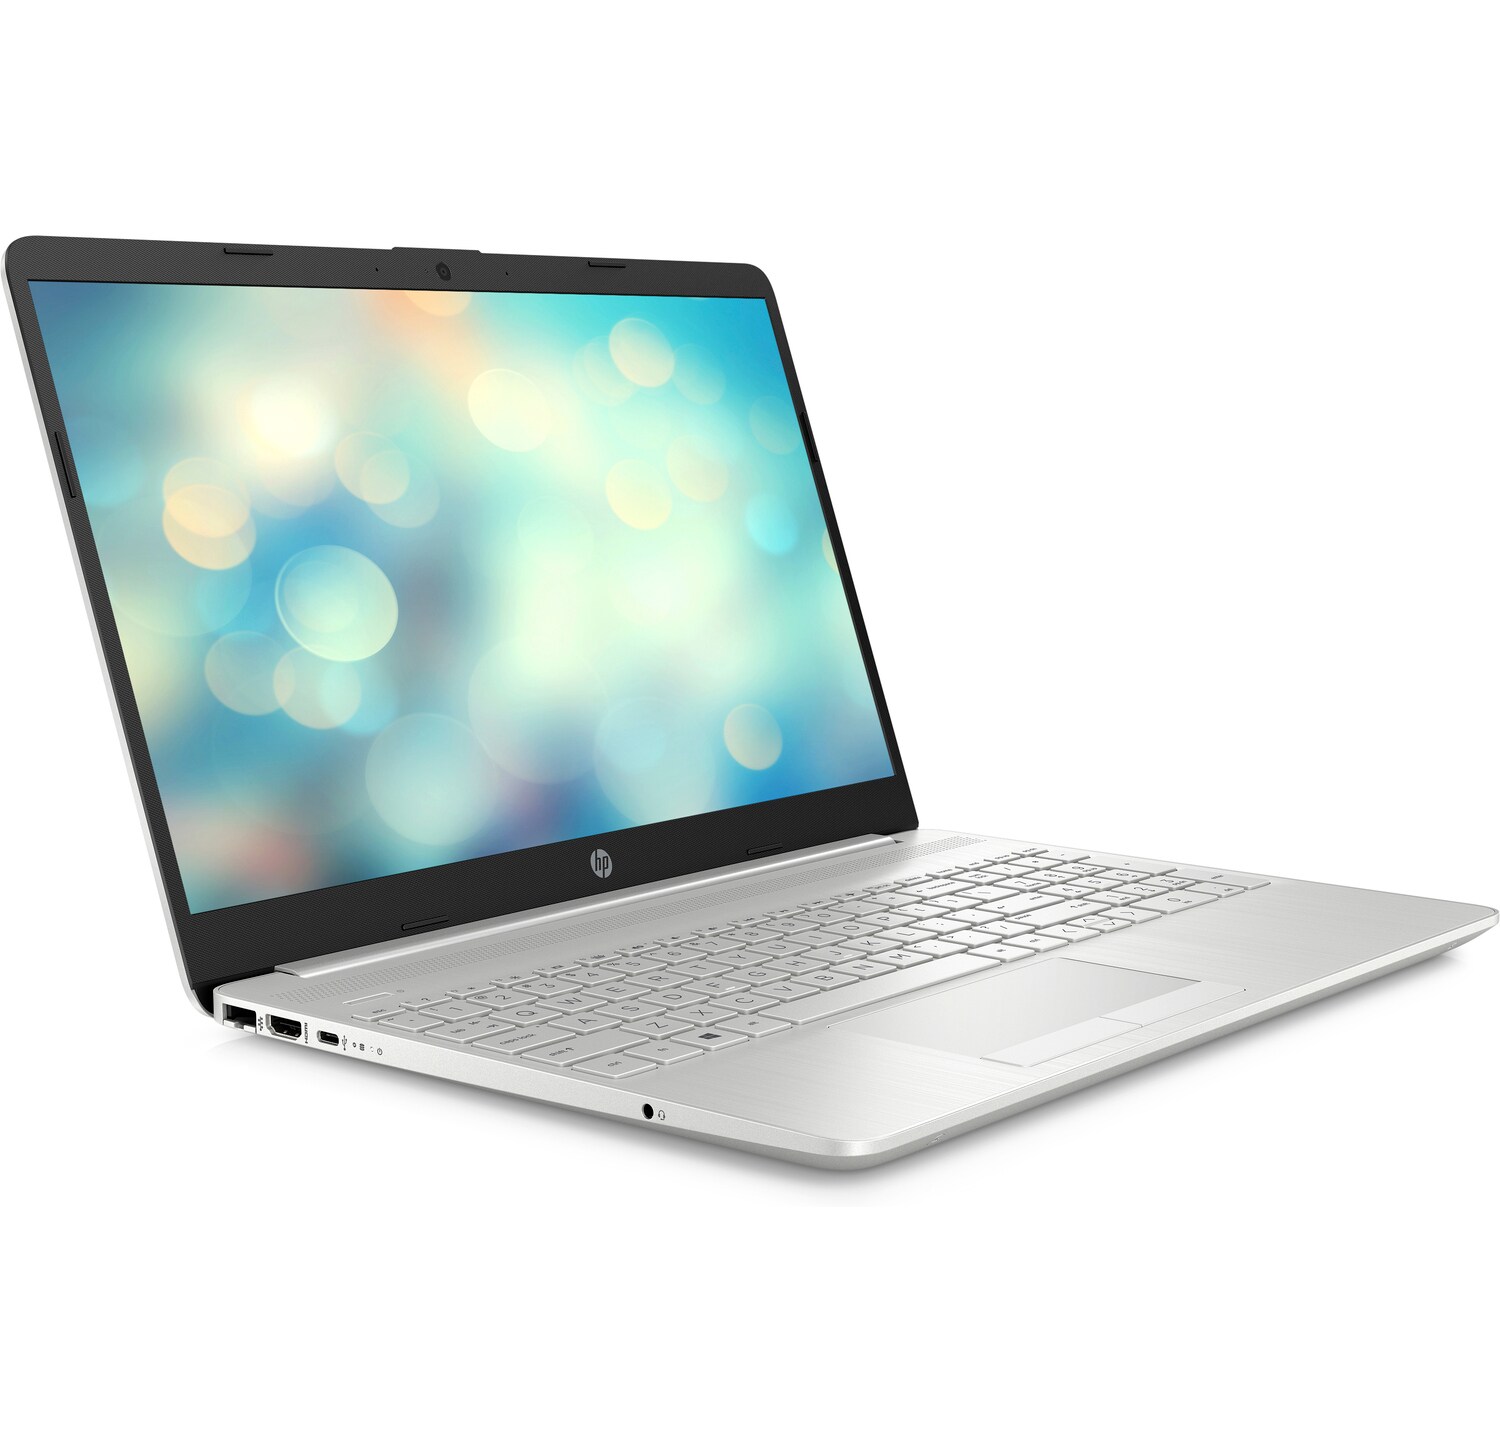 Laptop HP 15S DU0072TX (8WP16PA) CORE I3 7020U 4G 256G VGA 2GB MX110 FULL H 31315_c06251820